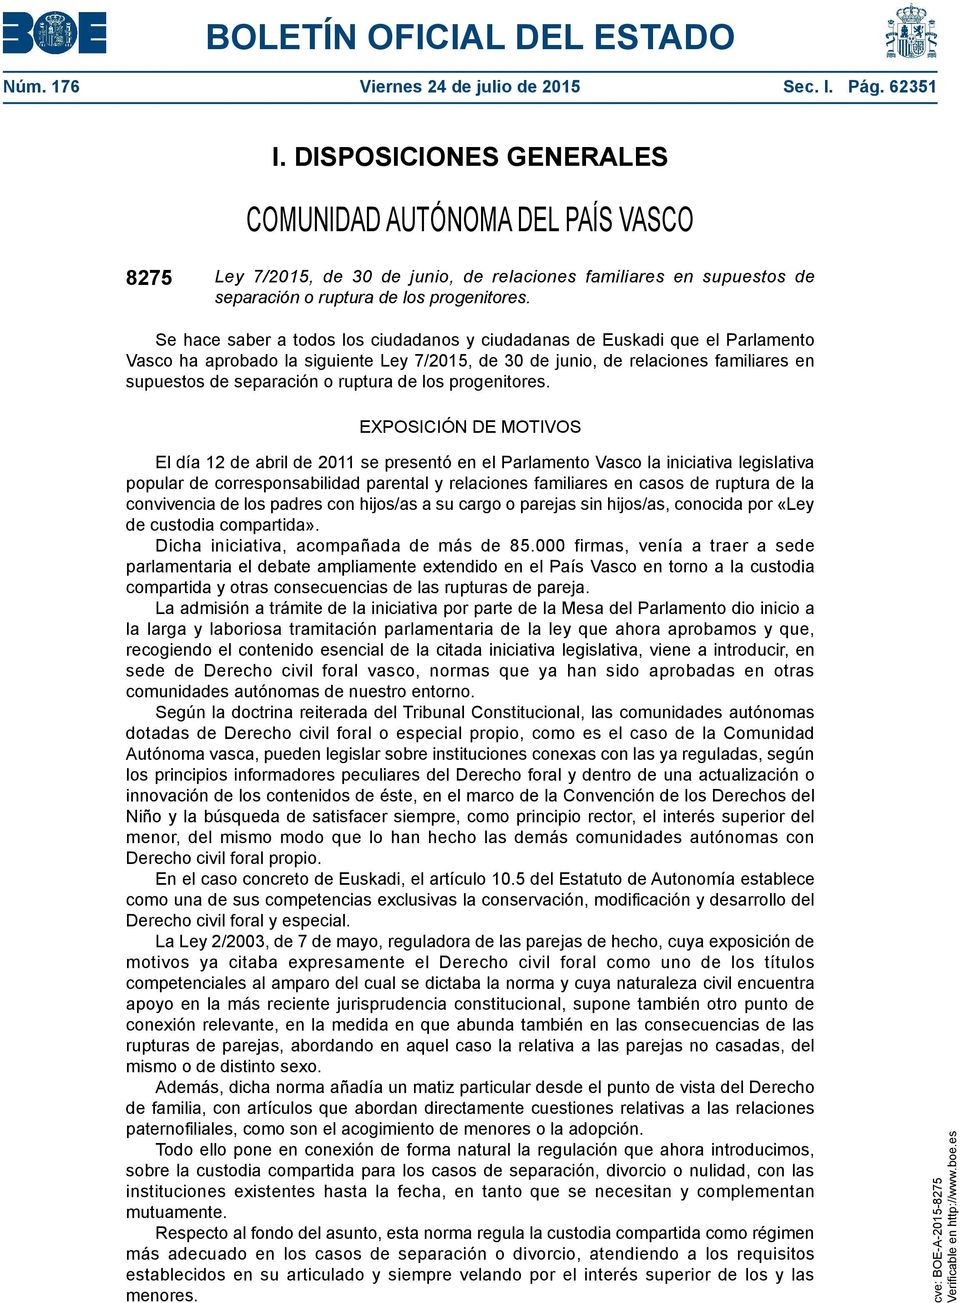 Se hace saber a todos los ciudadanos y ciudadanas de Euskadi que el Parlamento Vasco ha aprobado la siguiente Ley 7/2015, de 30 de junio, de relaciones familiares en supuestos de separación o ruptura